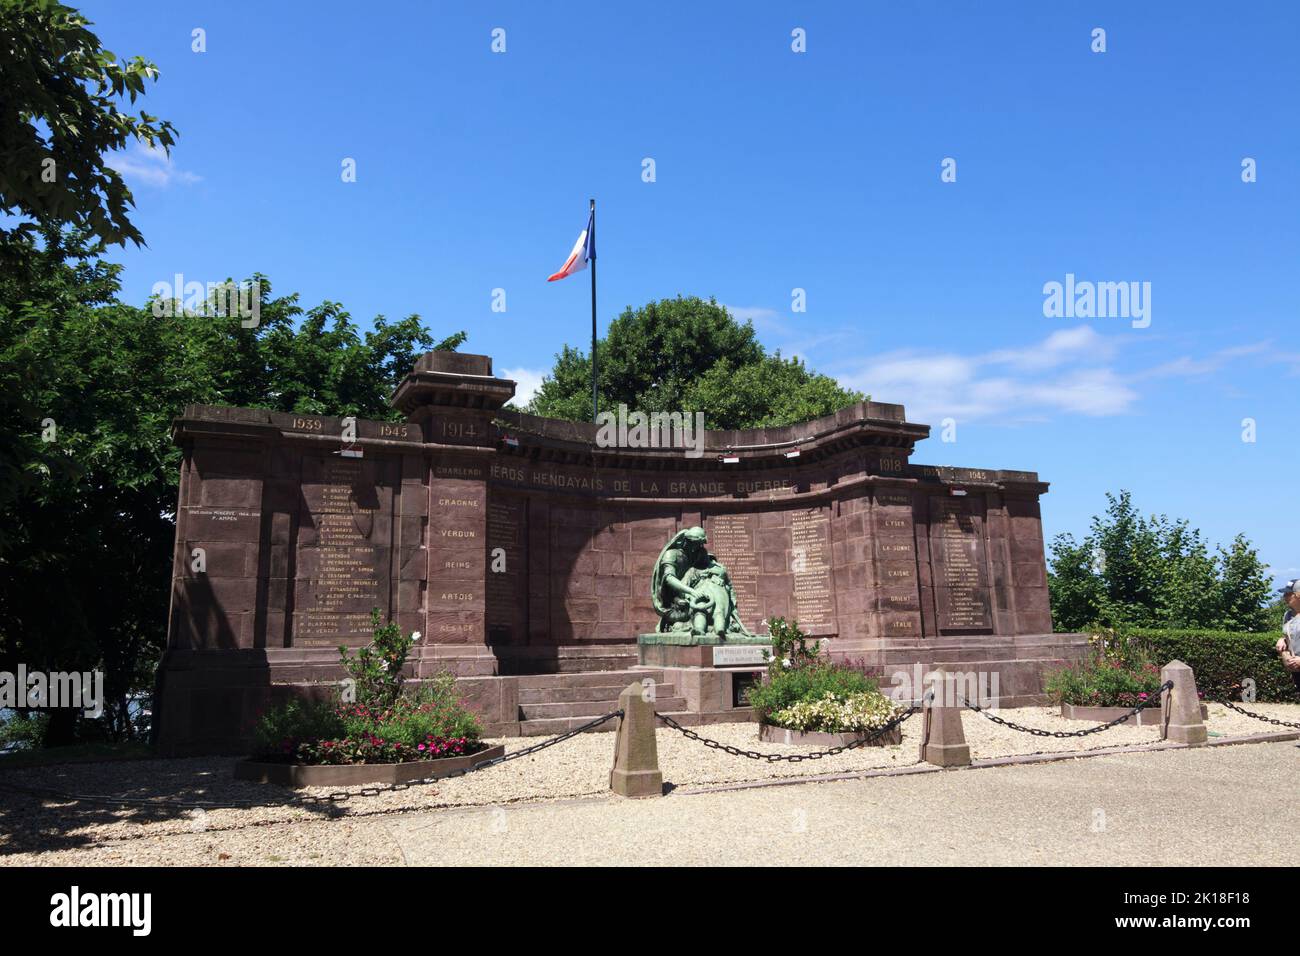 Hendaye, País Vasco francés, Francia: Monumento conmemorativo a los caídos en las guerras mundiales de 1st y 2nd. Foto de stock